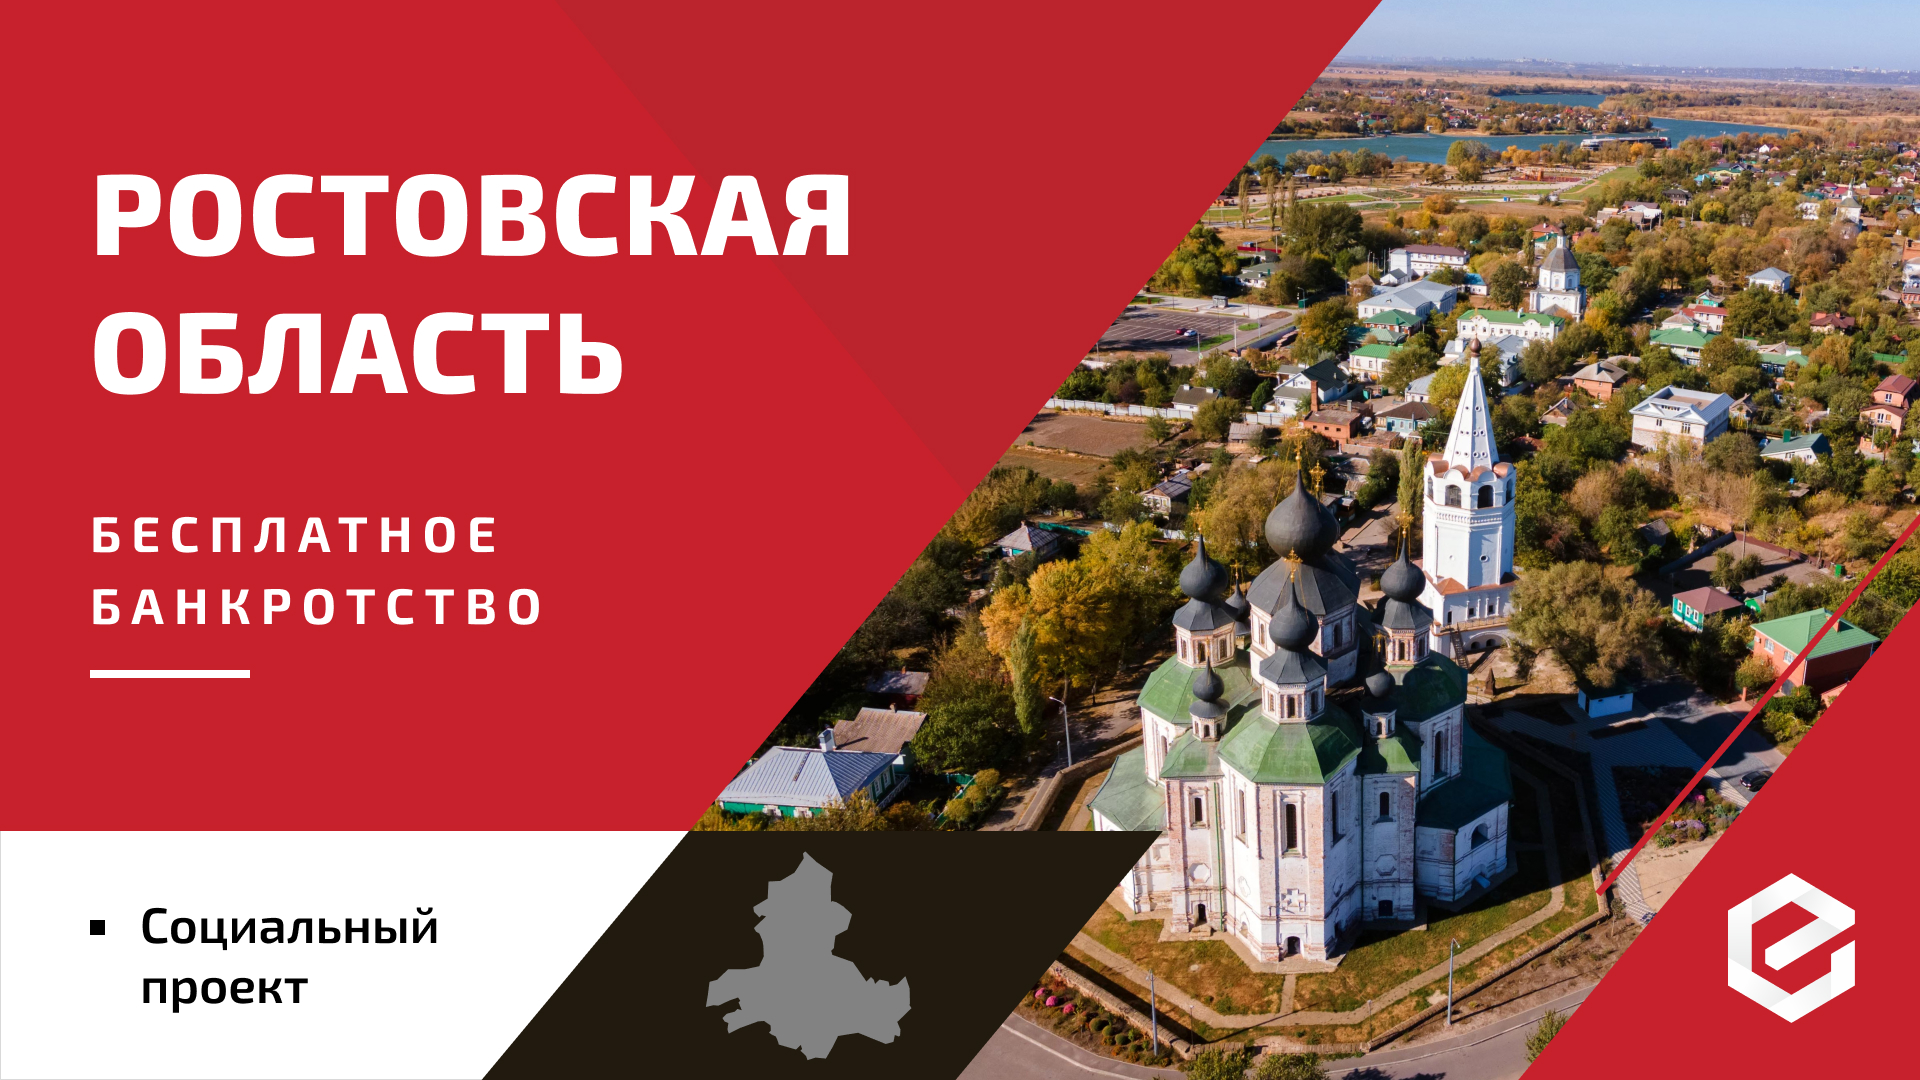 Для жителей Ростовской области «Единый Центр Защиты» предоставляет бесплатную квоту на списание долгов